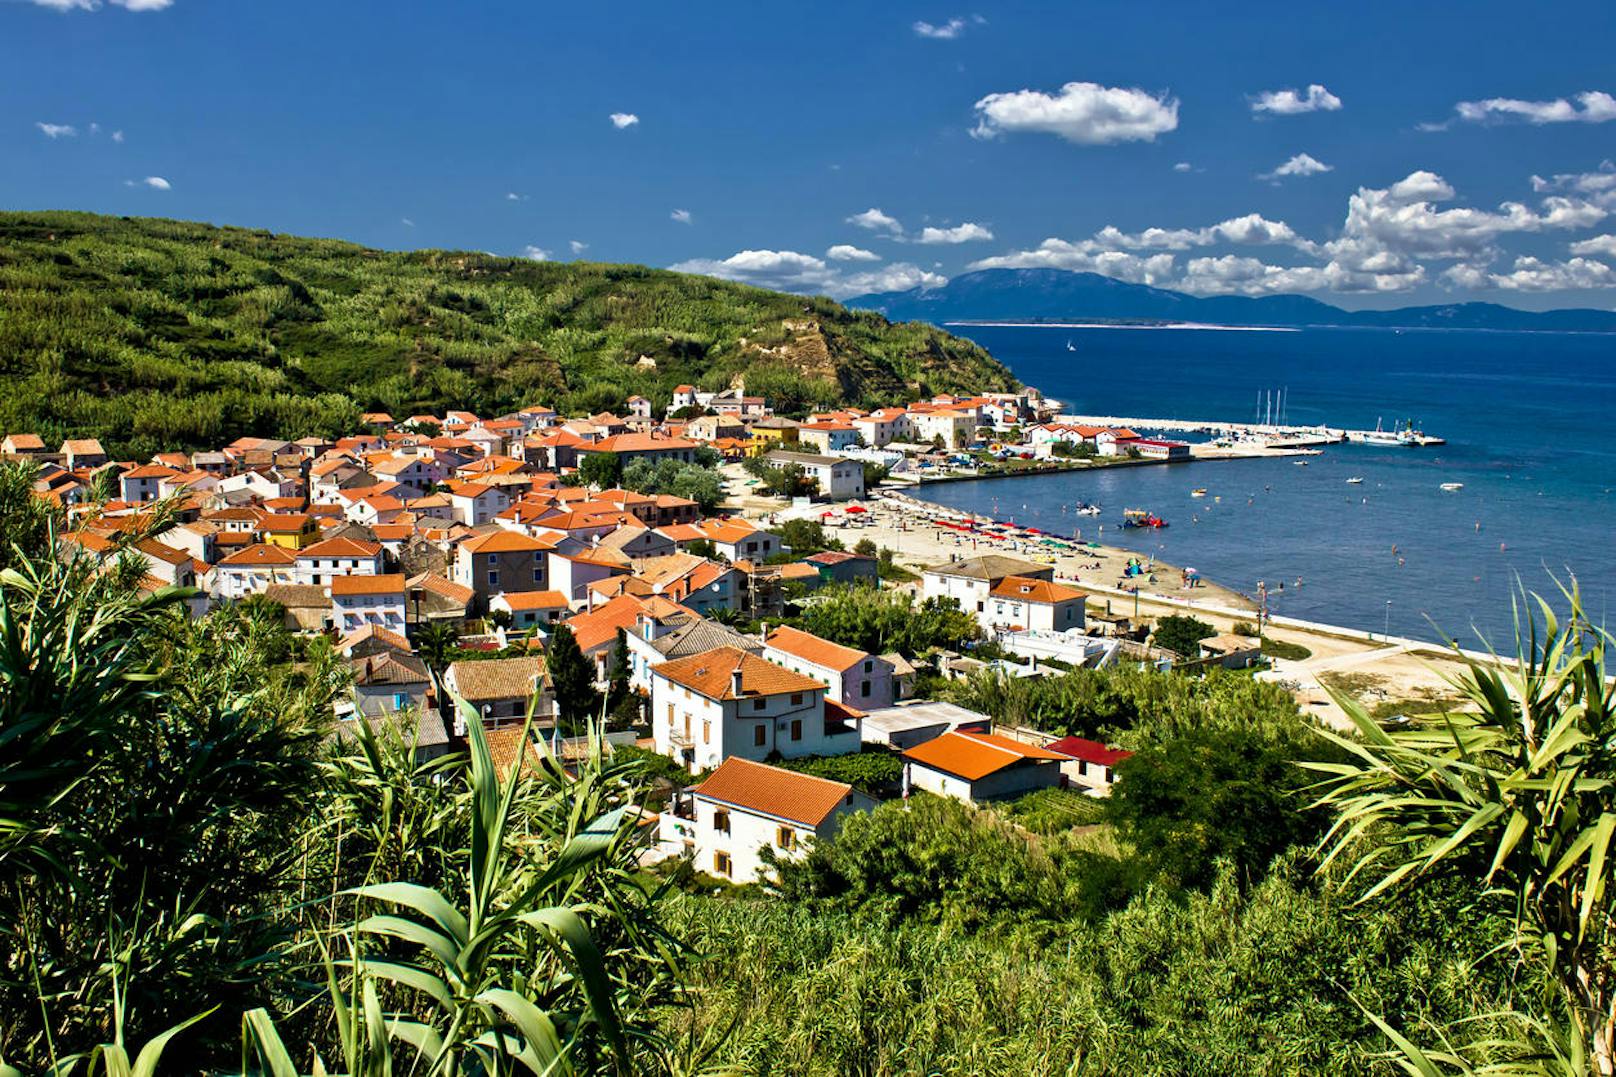 Susak befindet sich im Westen der weit bekannteren kroatischen Insel Loinj und sollte vor allem von all jenen Kroatien-Besuchern ins Auge gefasst werden, die sich nicht nur über, sondern auch unter Wasser gerne auf Erkundungstour begeben.